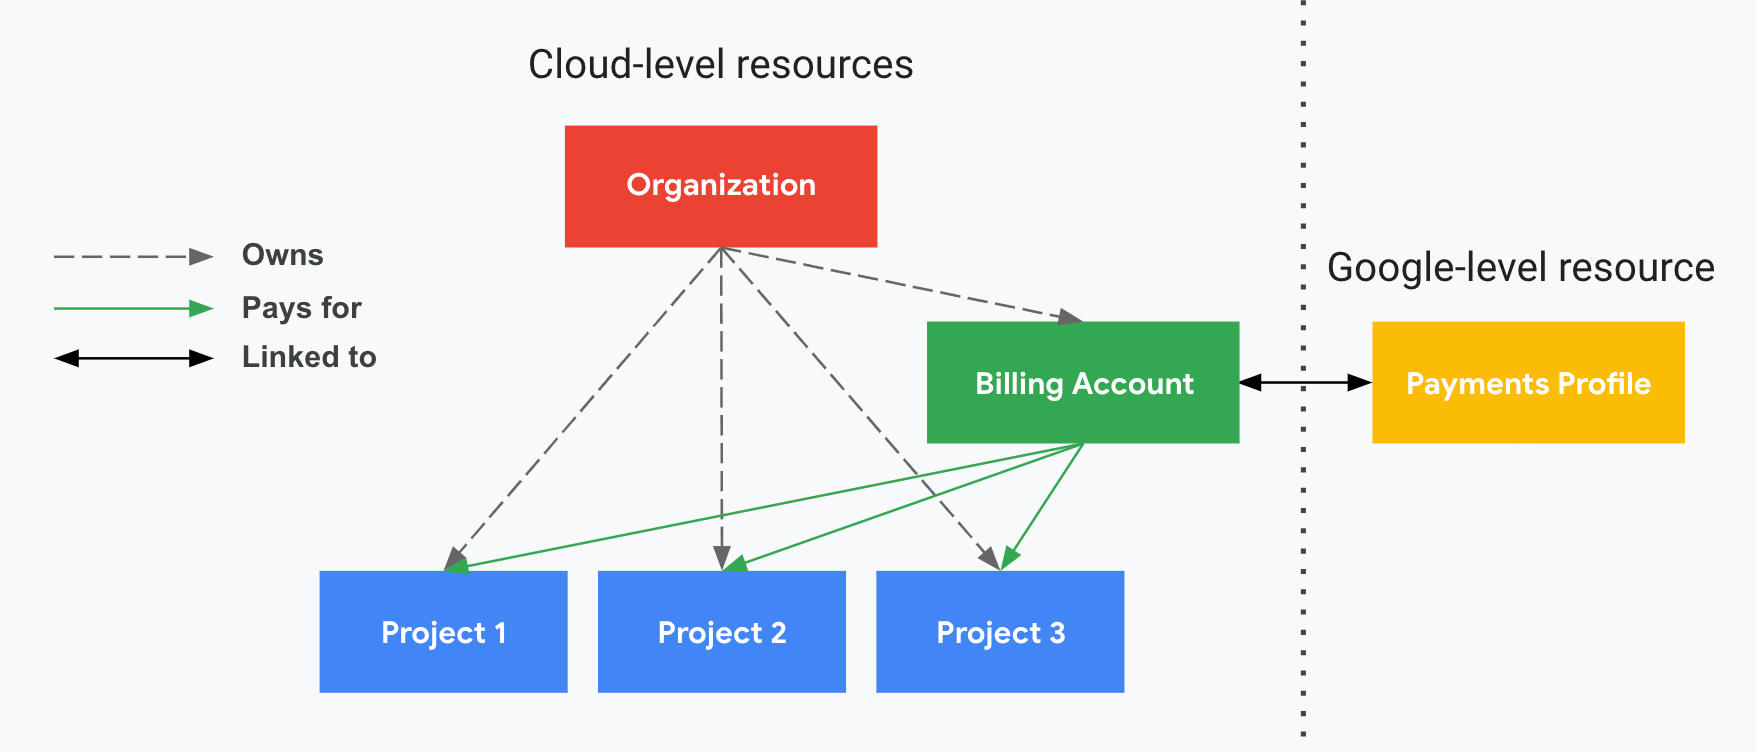 说明了项目与您的 Cloud Billing 账号、组织以及您的 Google 付款资料之间的关系。一侧显示了您的 Google Cloud 级资源（组织、Cloud Billing 账号和关联项目），另一侧显示了您的 Google 级资源（Google 付款资料），两侧由垂直虚线分隔。您的项目由您的 Cloud Billing 账号支付，该账号已与您的 Google 付款资料关联。组织使用 IAM 控制 Cloud Billing 账号的所有权。